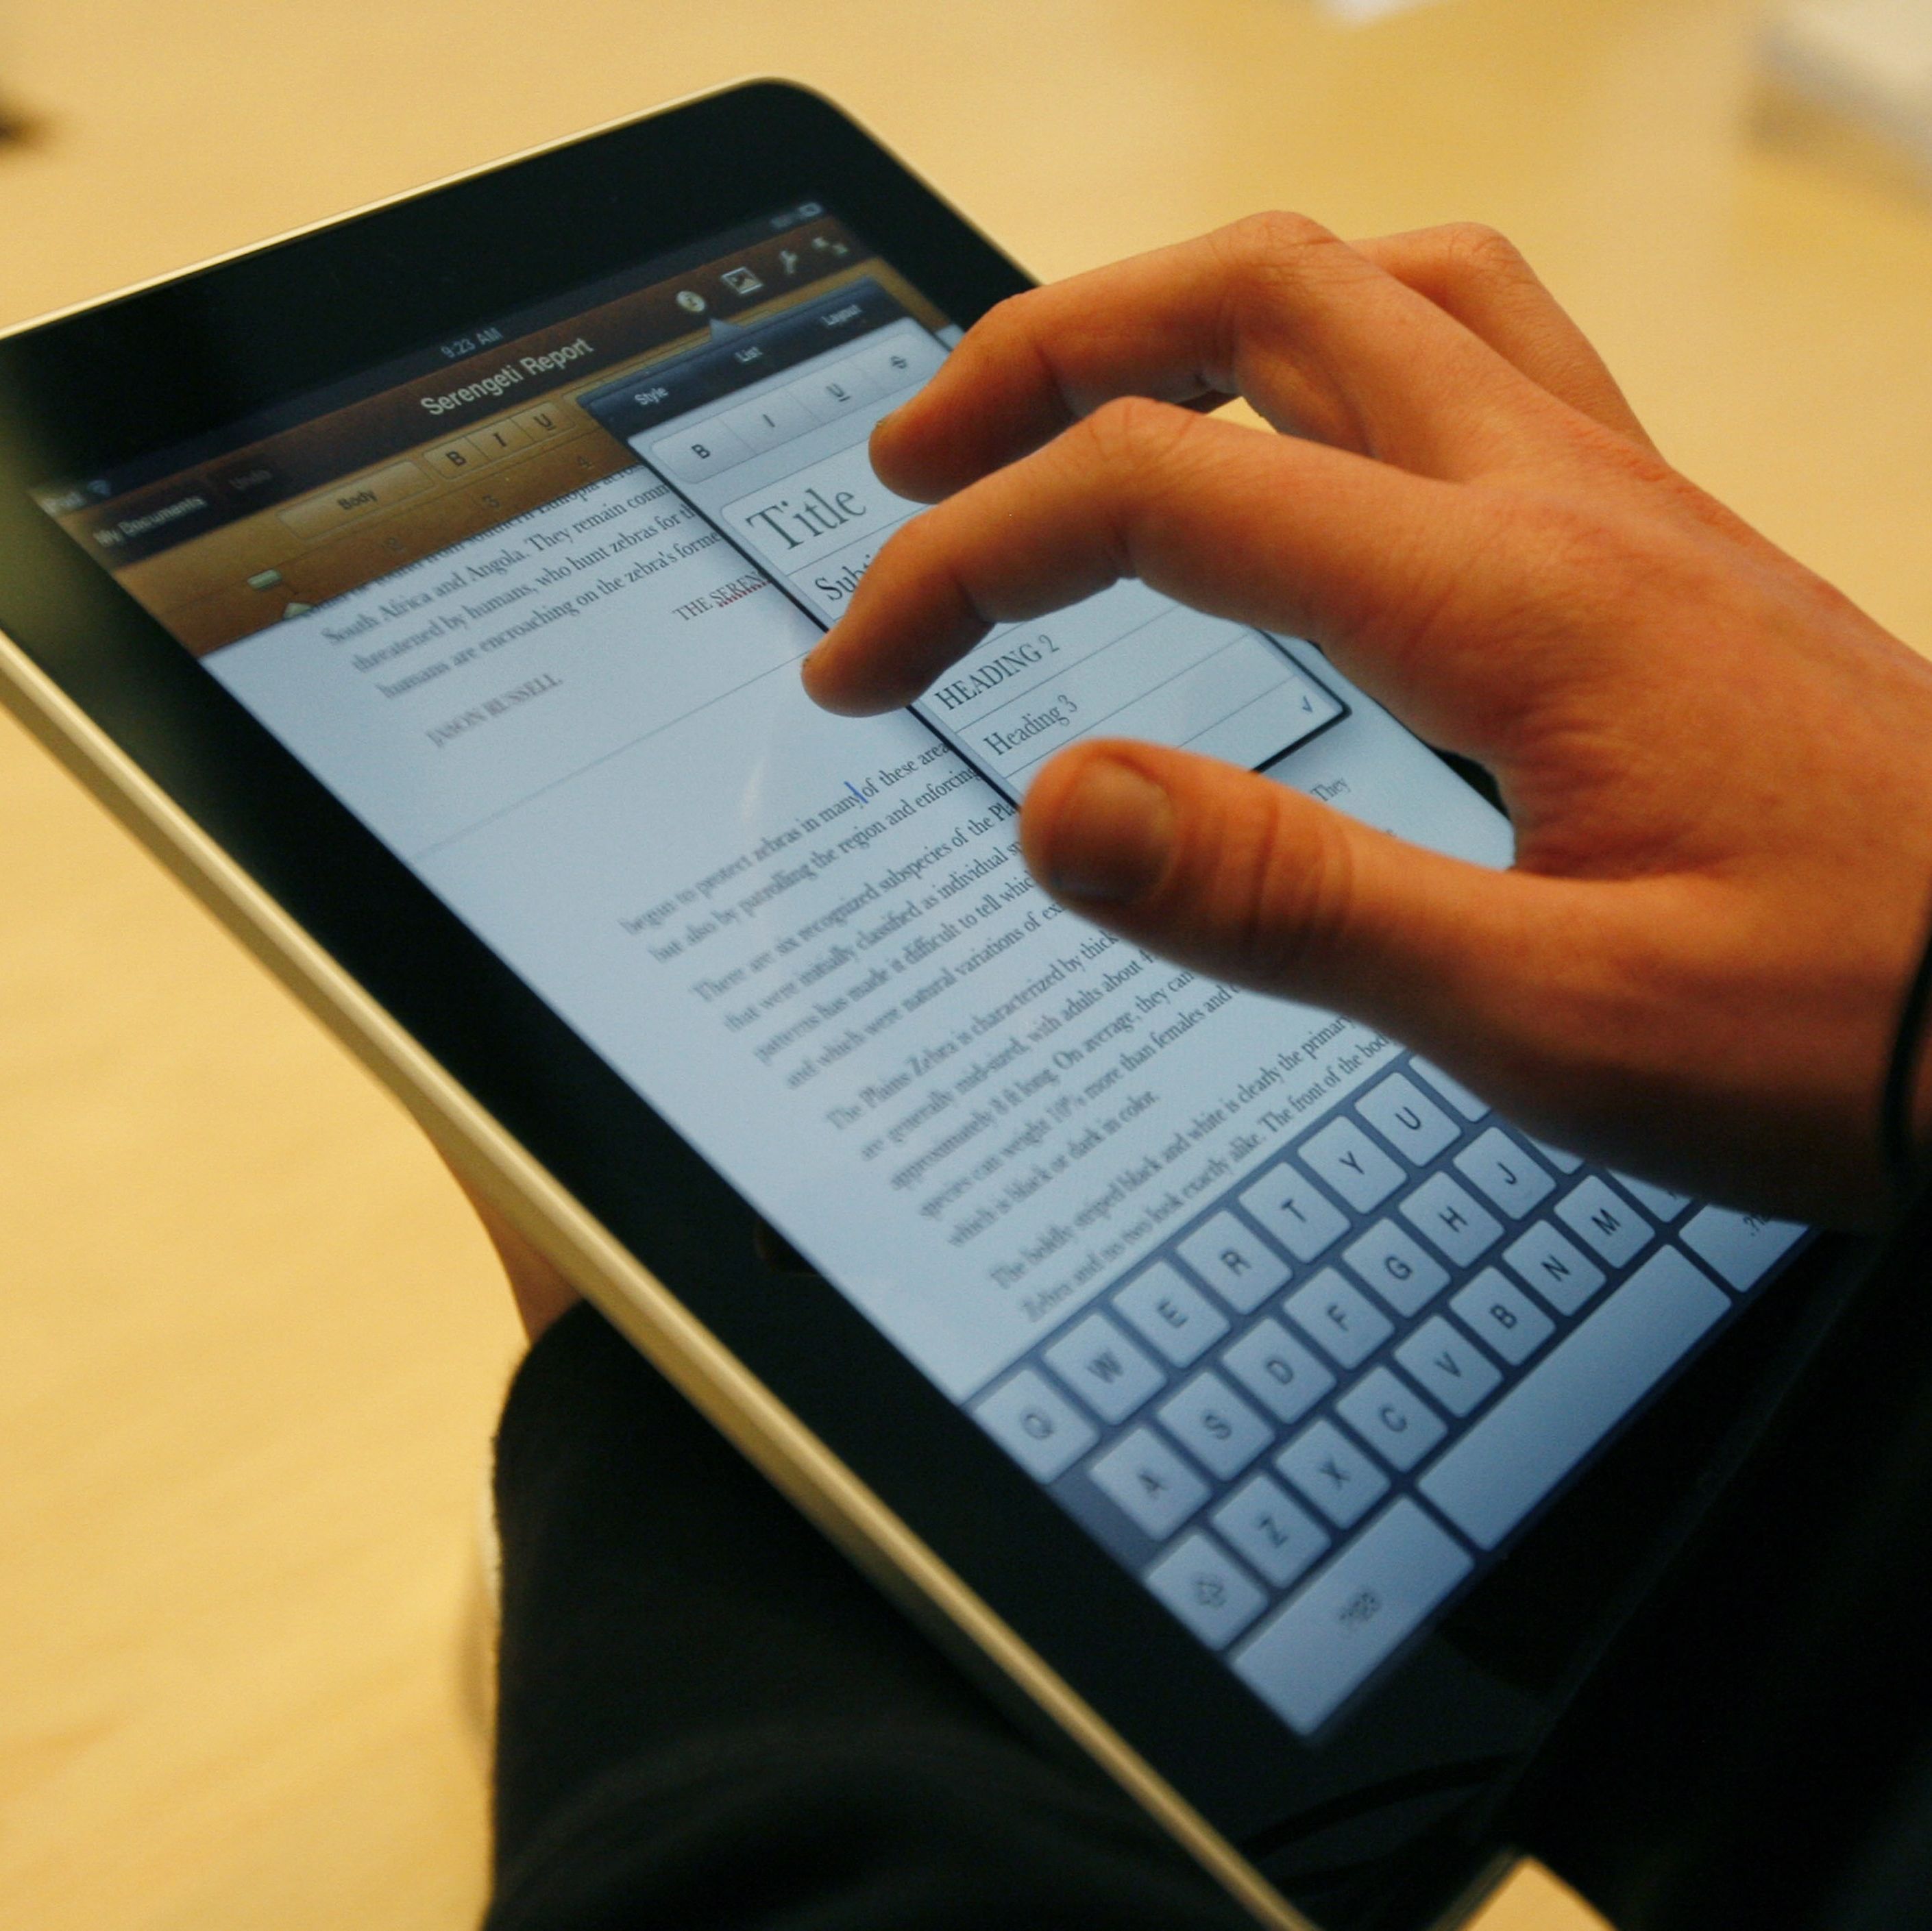 ГЕРБ избрала най-ниската цена за iPad-ите